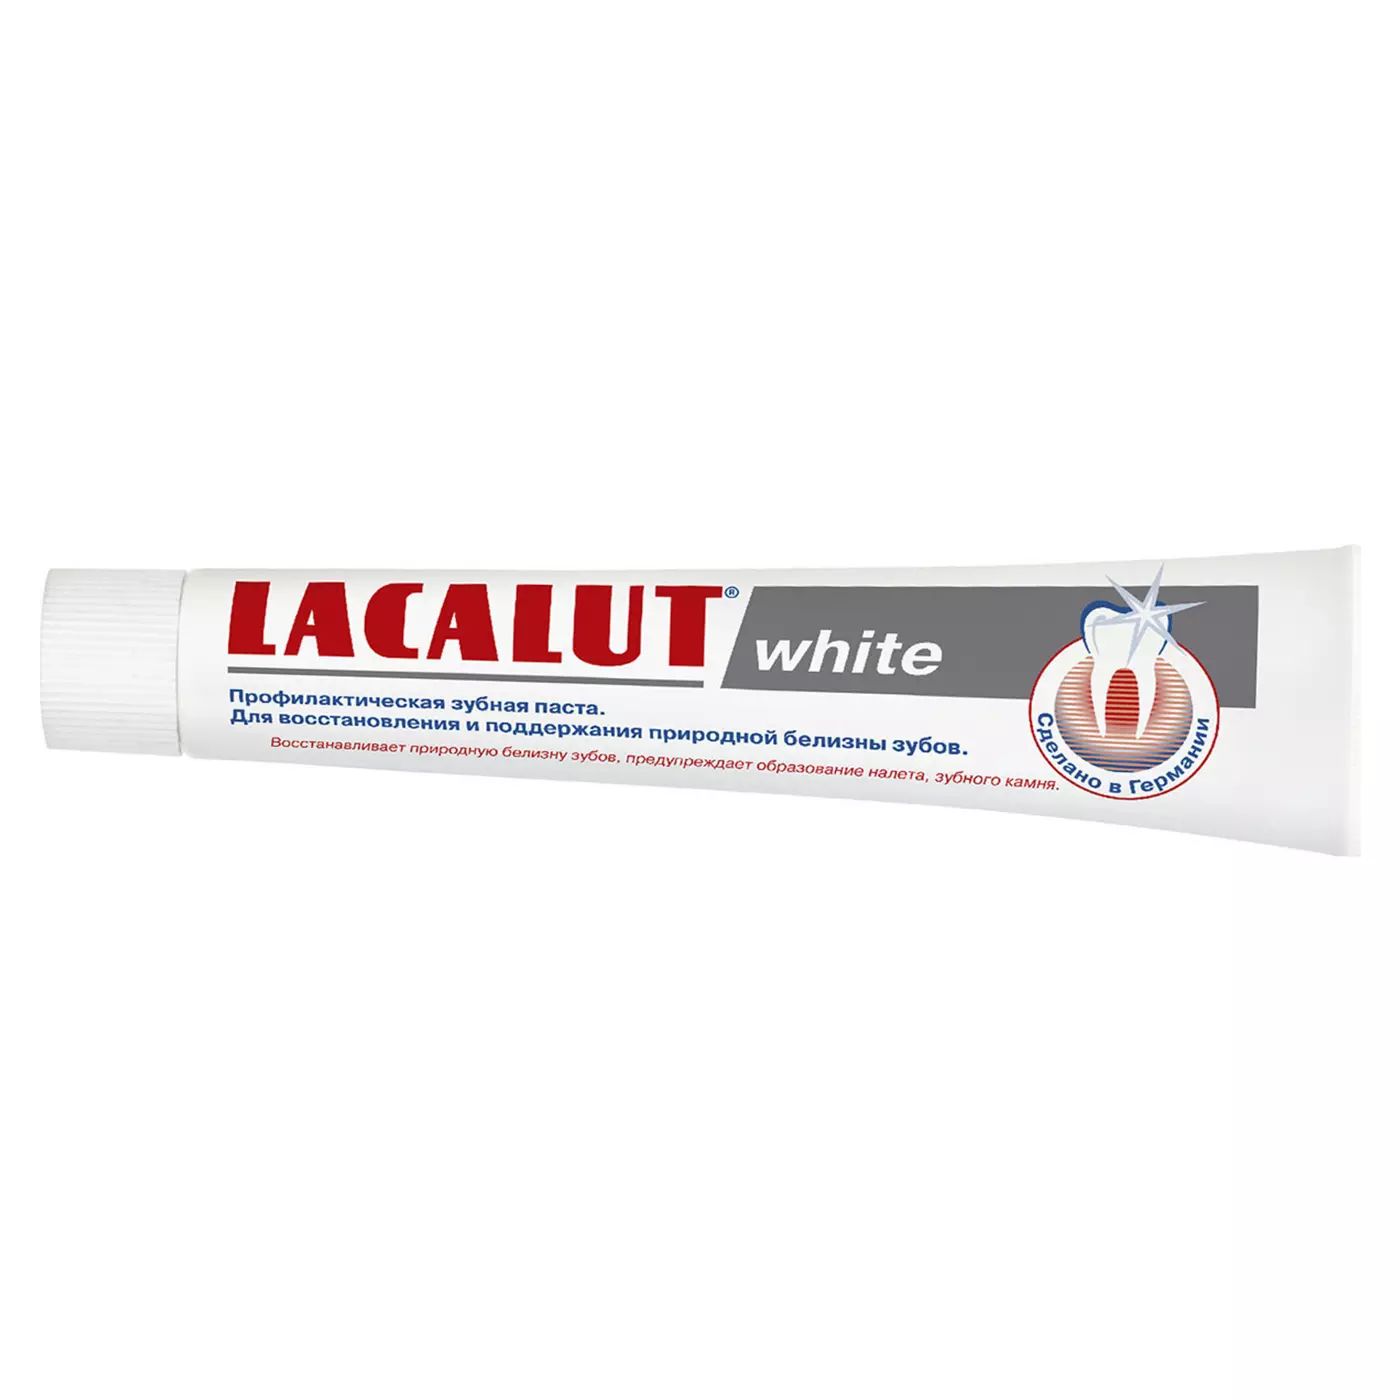 Профилактическая зубная паста LACALUT white 75 мл lacalut зубная паста white